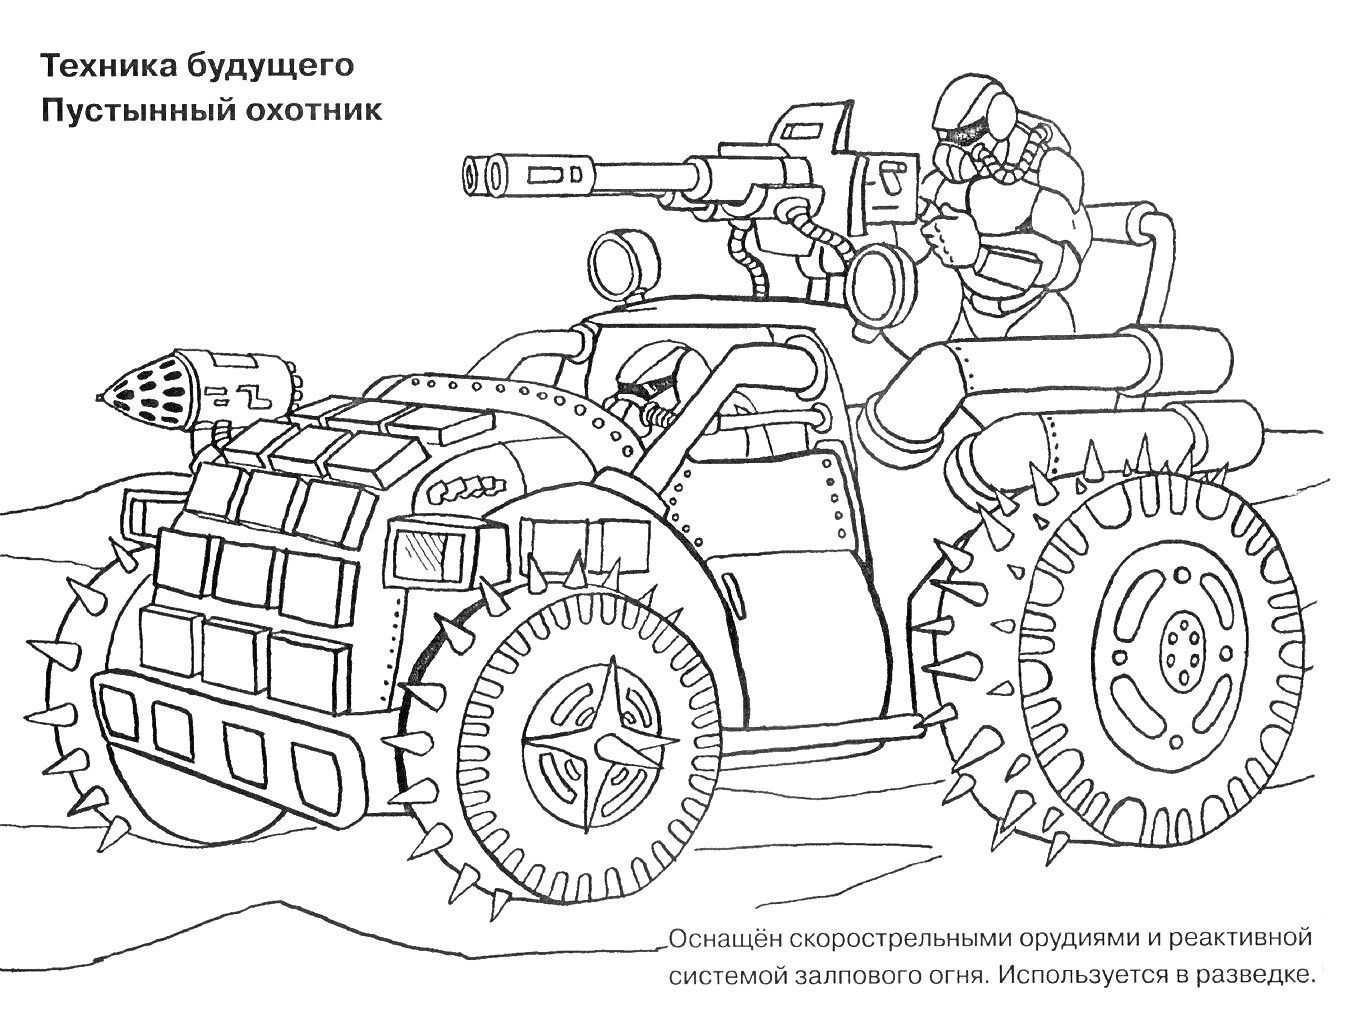 Раскраска Техника будущего - Пустынный охотник: боевой автомобиль с крупнокалиберным пулеметом и ракетной установкой, пилот в шлеме